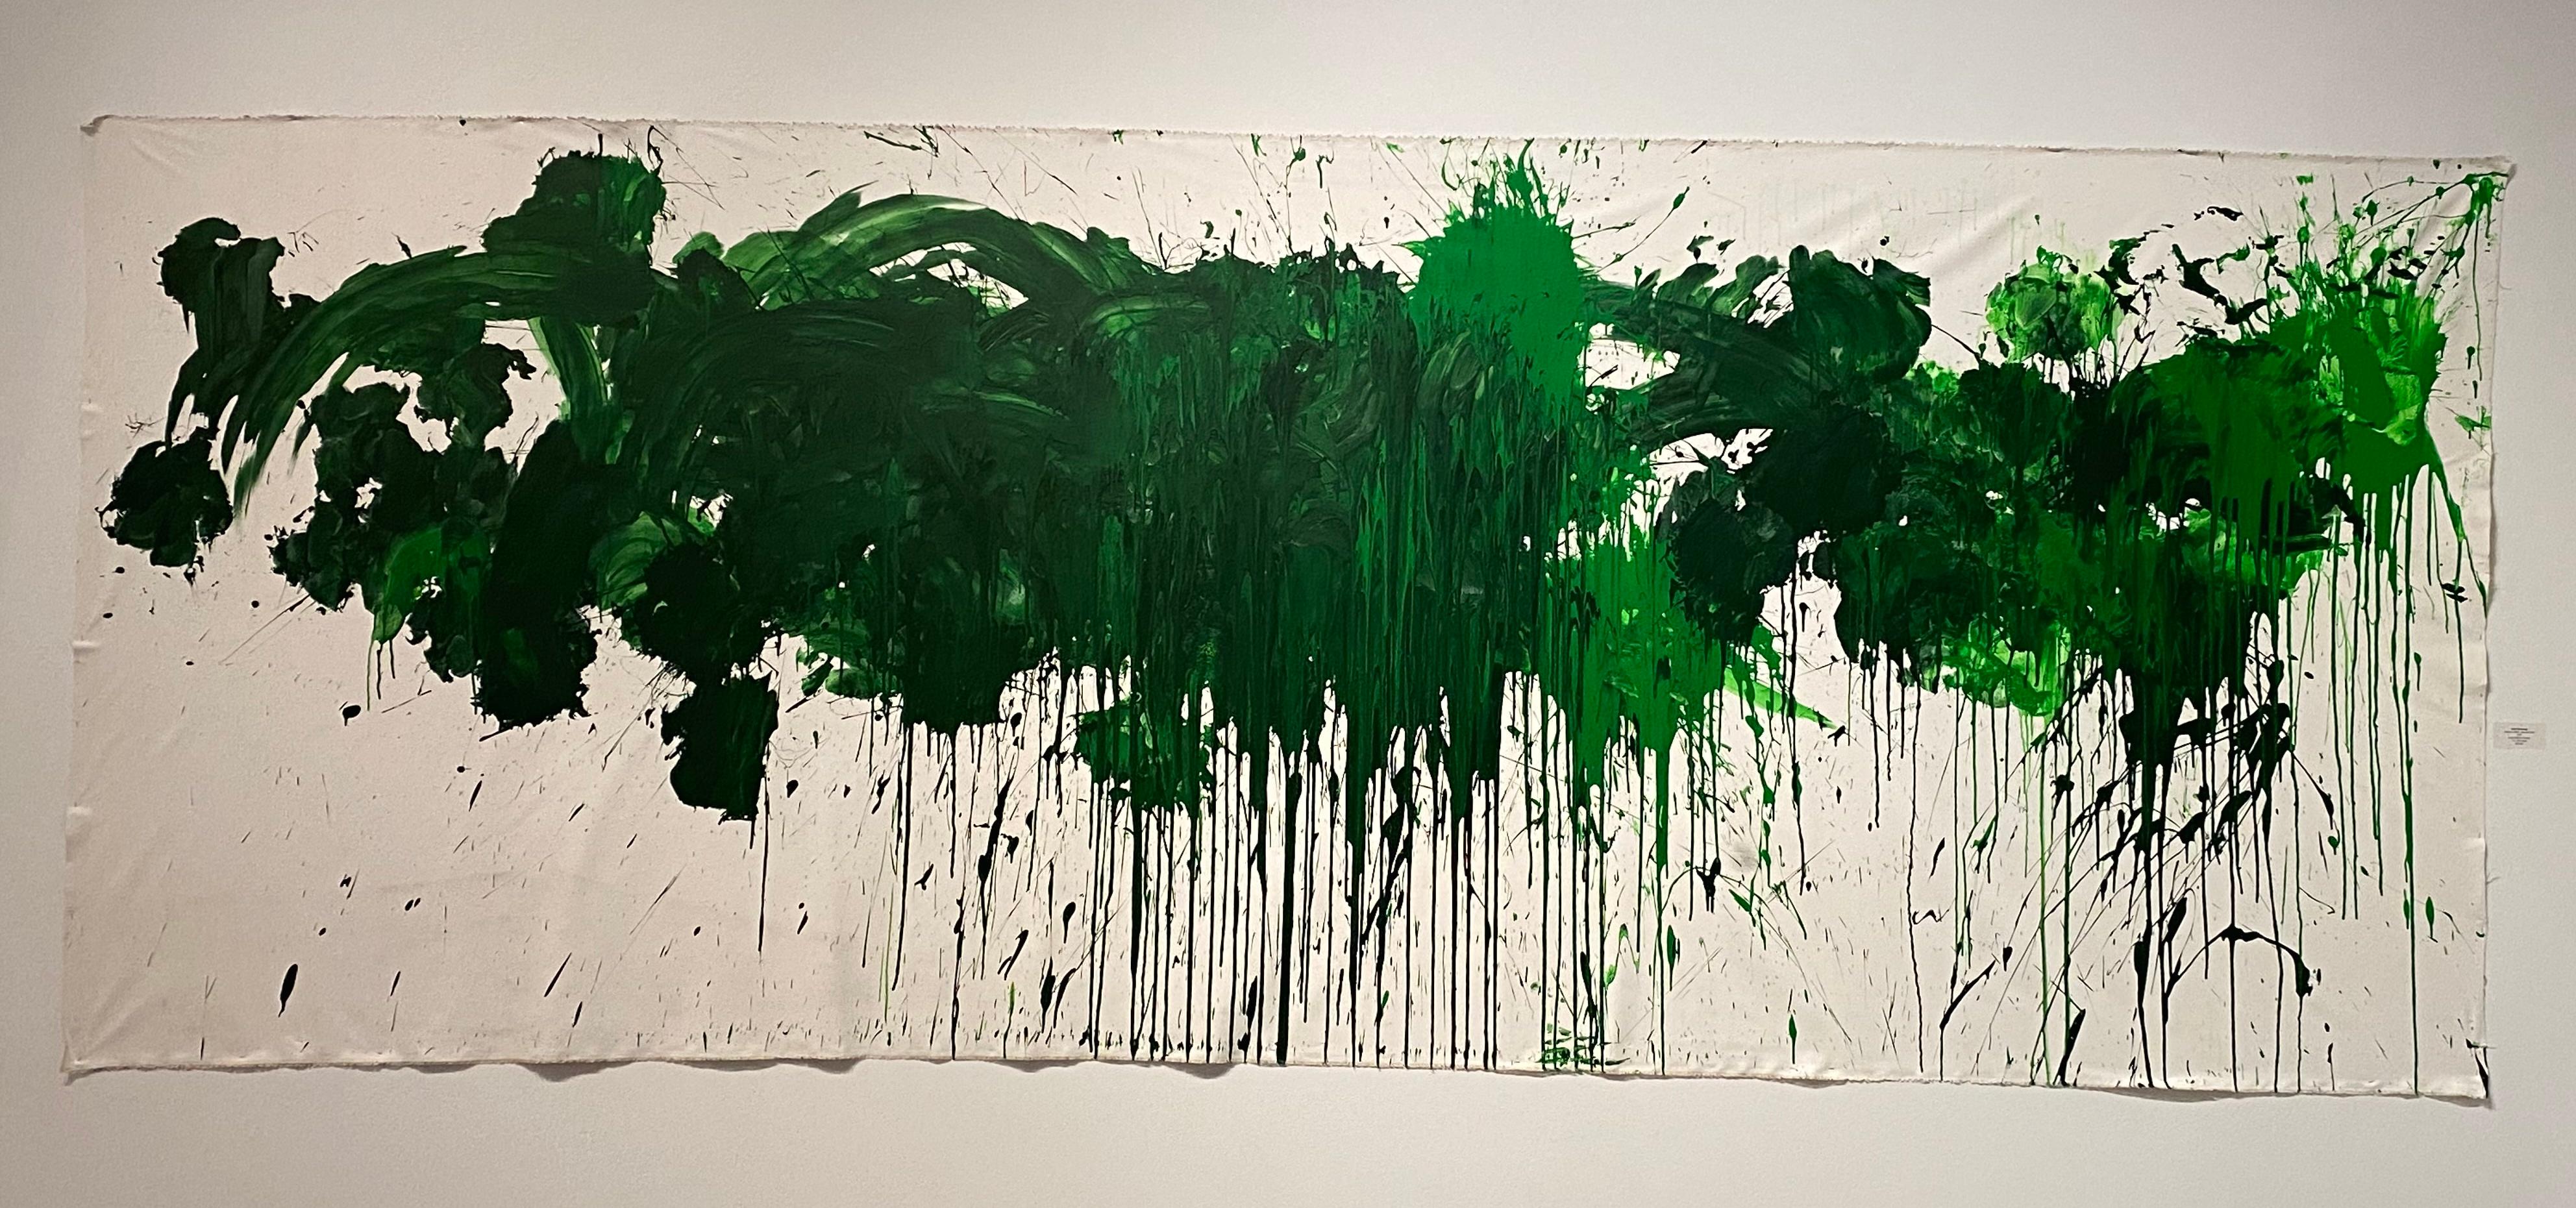 Abstract Painting Ushio Shinohara - « Green on White », acrylique sur toile - Peinture abstraite de boxe